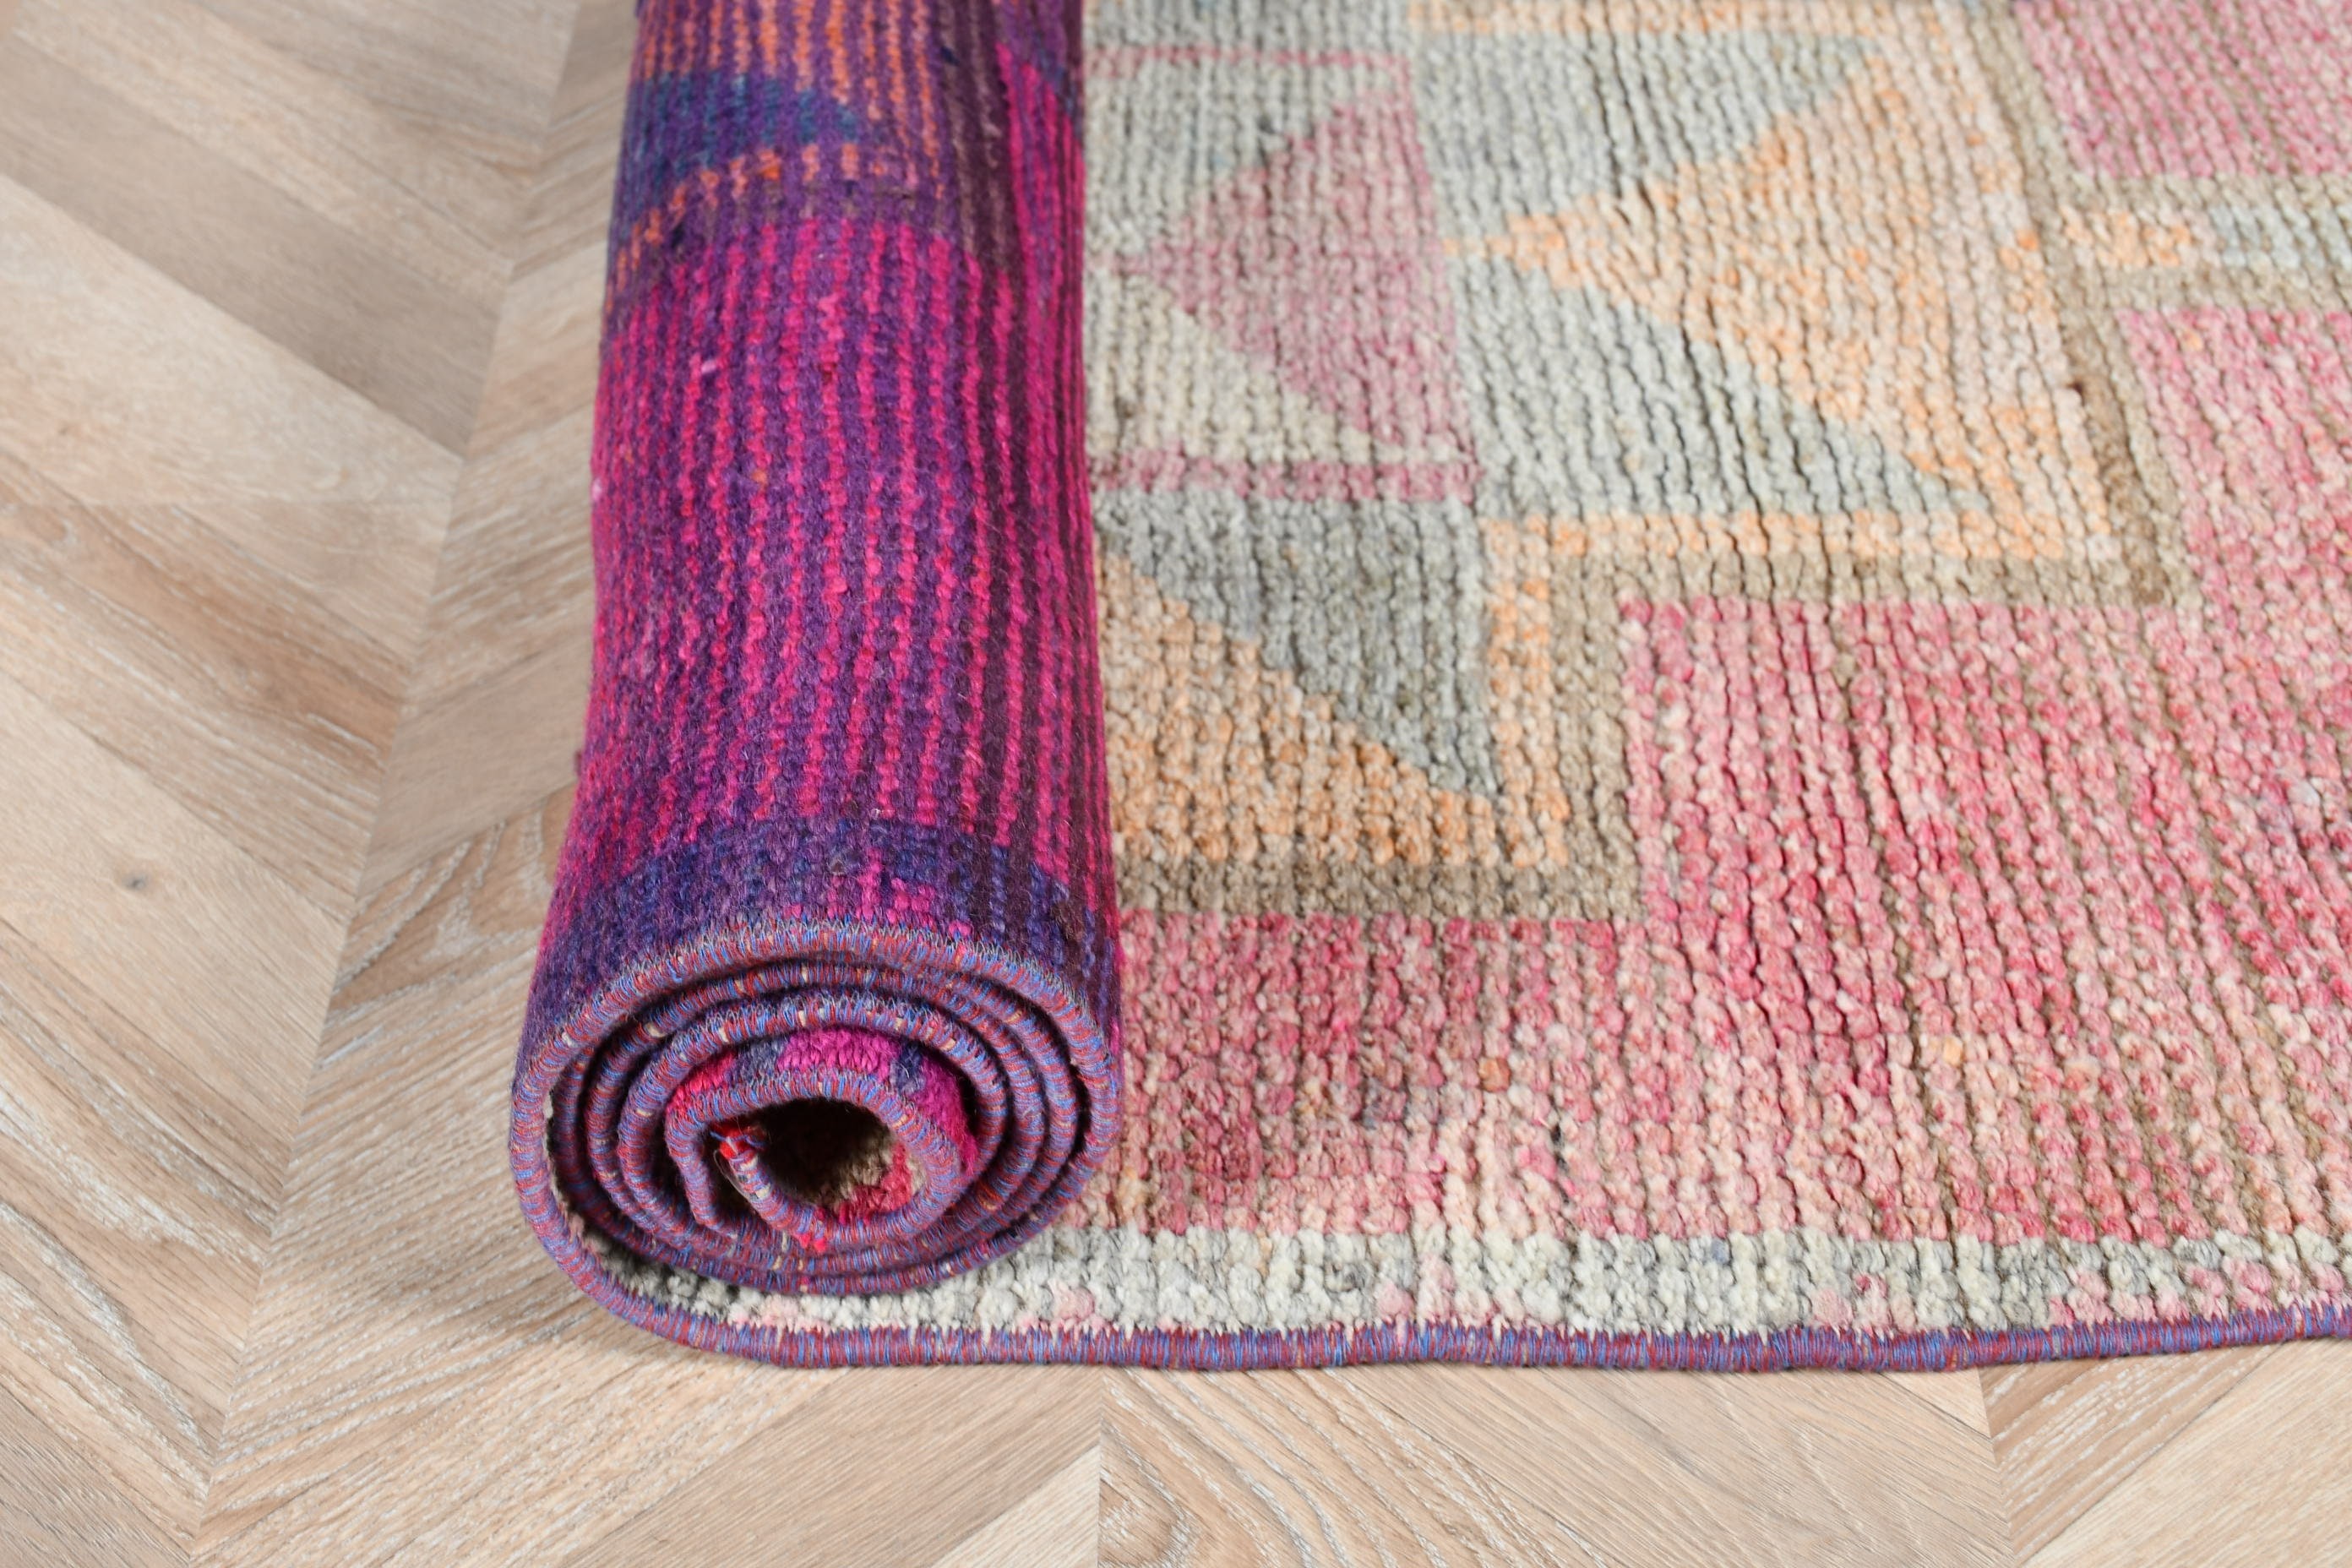 Tribal Rug, Pink Antique Rug, Rugs for Kitchen, Kitchen Rug, Hallway Rug, Turkish Rug, Vintage Rug, Home Decor Rugs, 2.8x10.8 ft Runner Rug